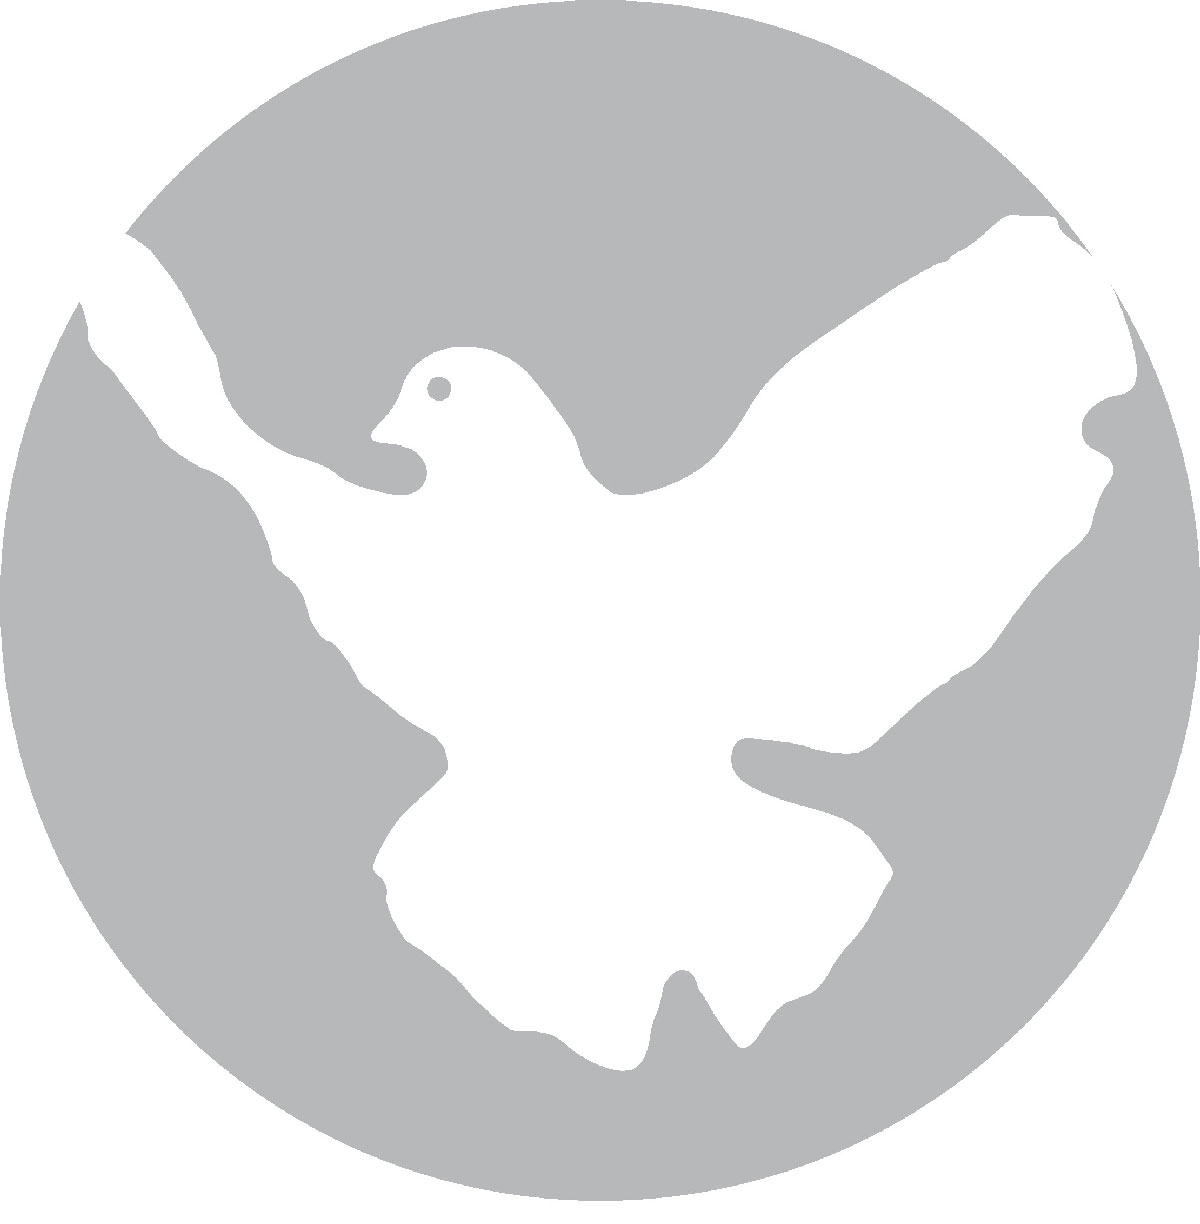 Friedenstaube - Nicht in unserem Namen - Friedenskoordination Berlin, Weltuntergangsuhr - Neues aus den Bewegungen, Blog